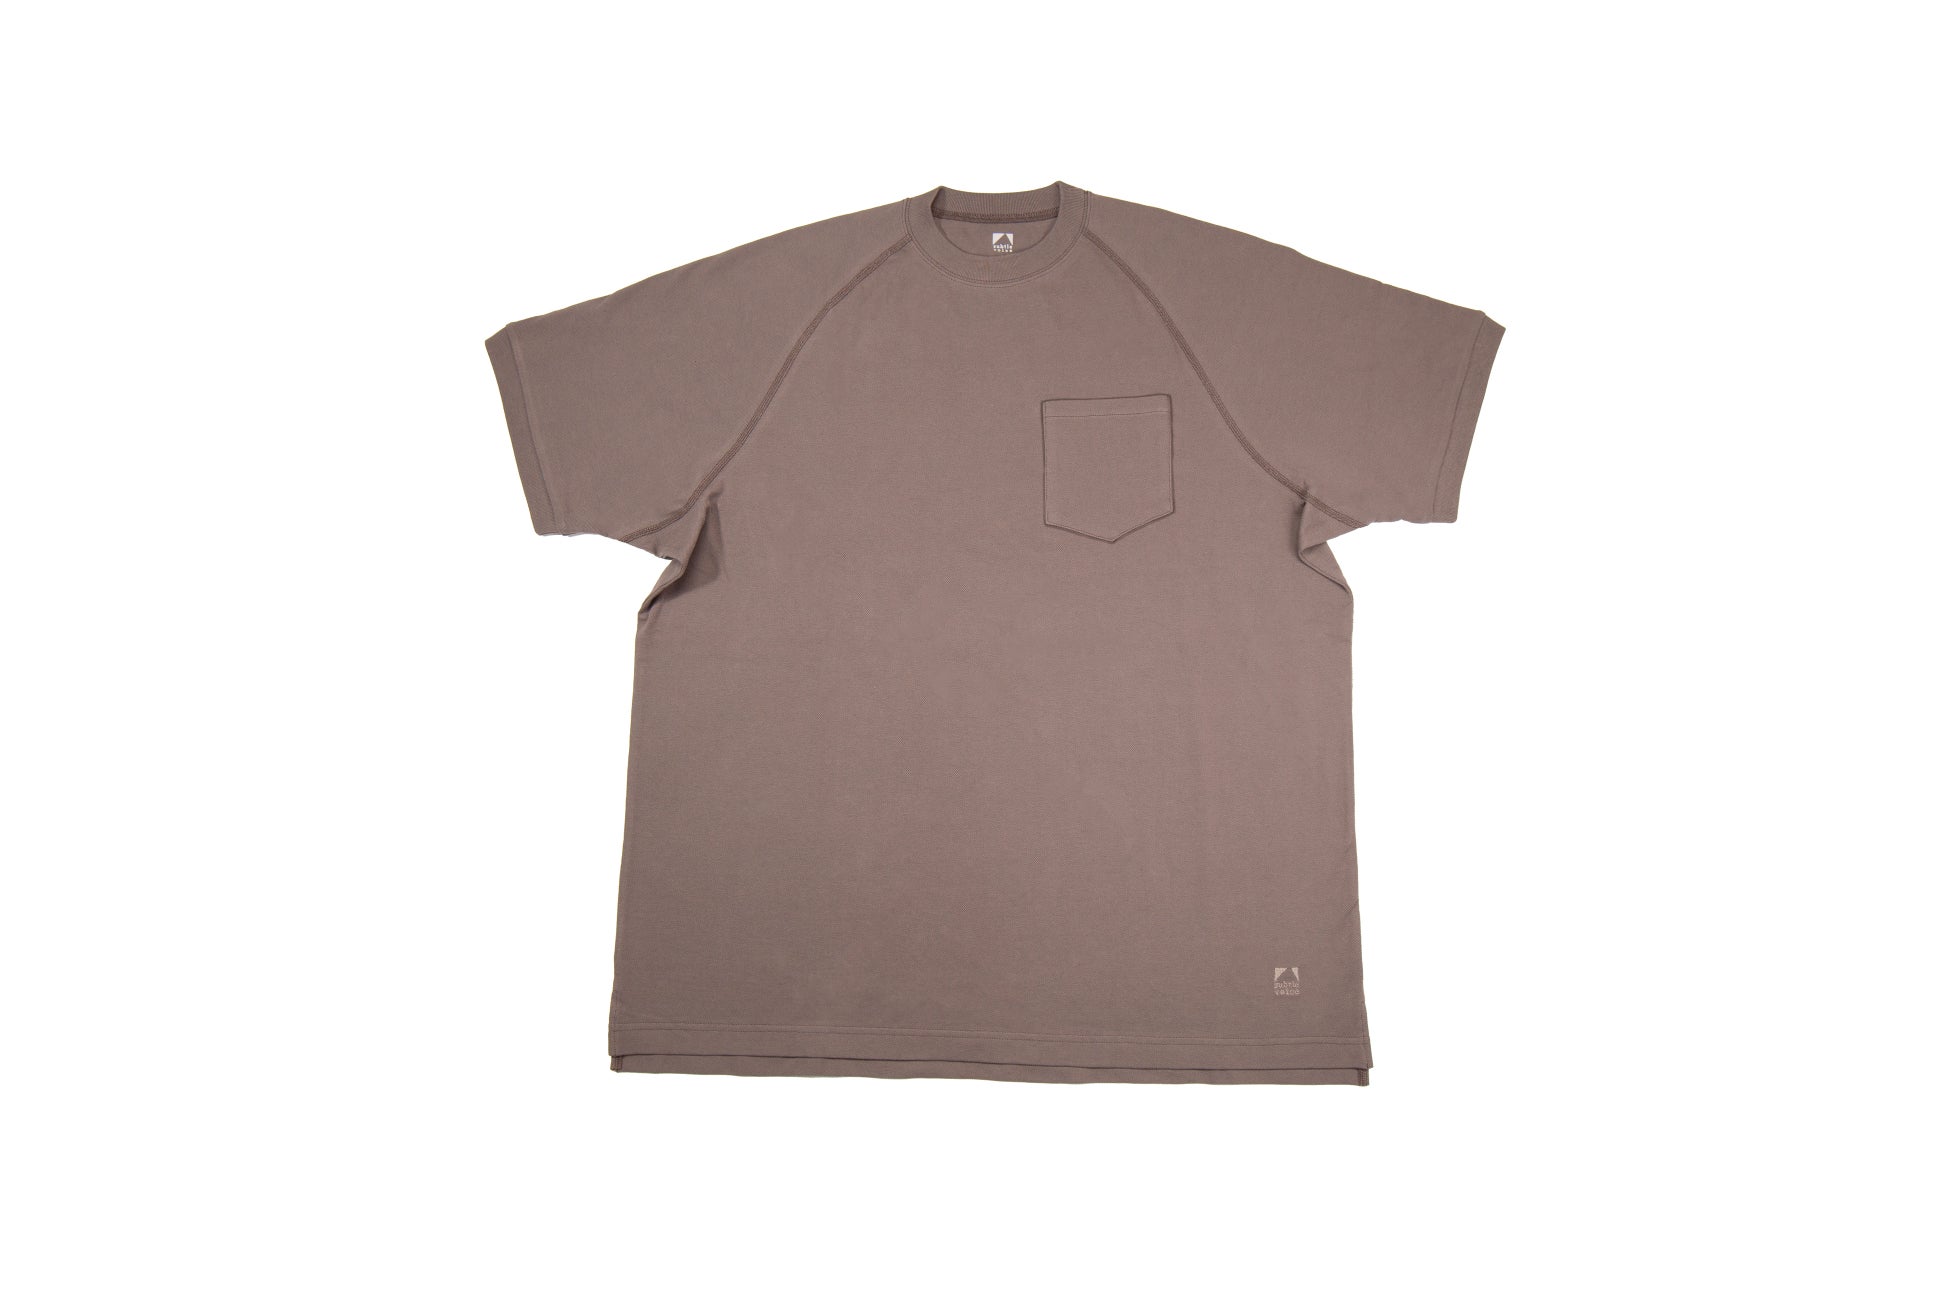 登山アパレルの本質的な価値を追求する日本発のブランド「サトルボイス」から、天然コットン本来の快適性と機能性を最大限に引き出したパフォーマンスTシャツの新モデルが登場。のサブ画像5